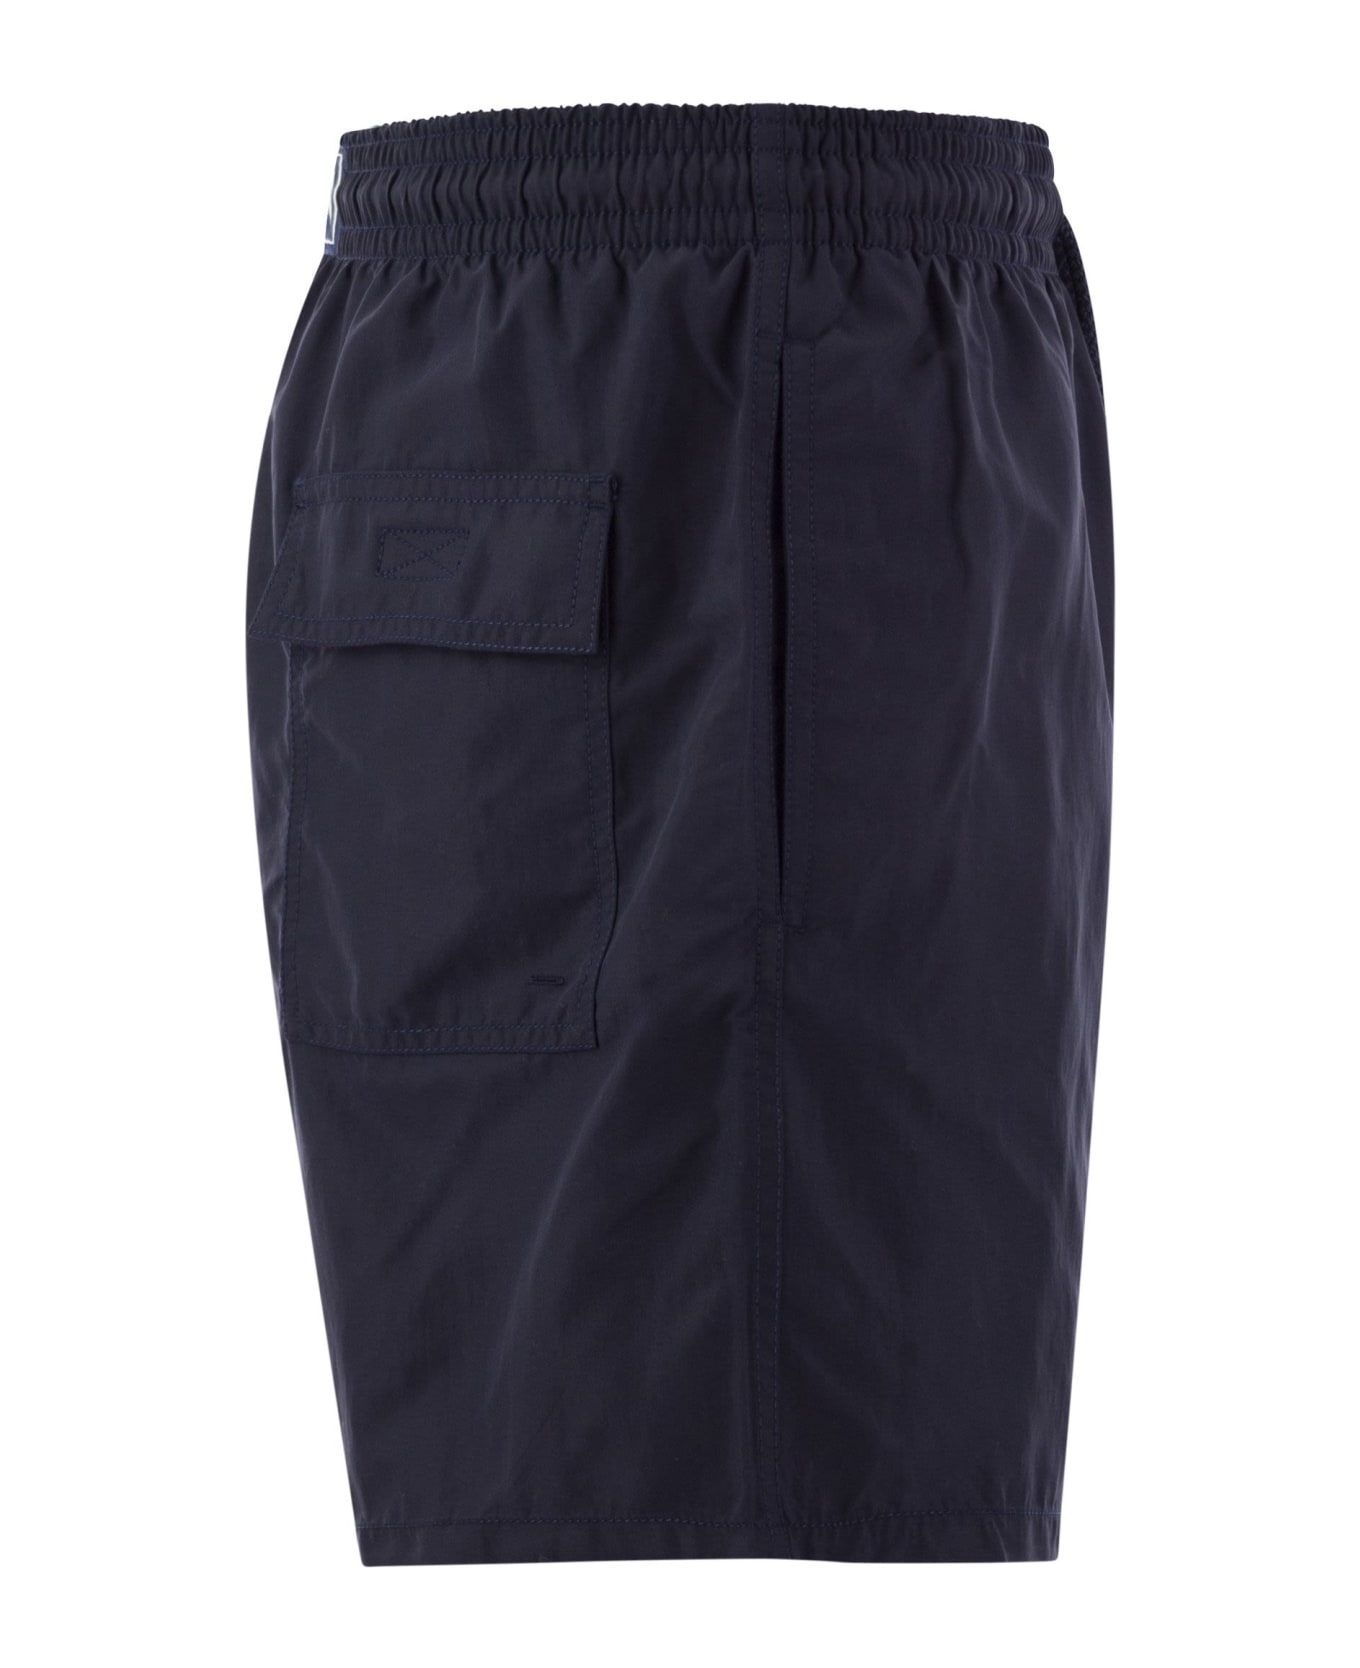 Vilebrequin Plain-coloured Beach Shorts - Marine Blue